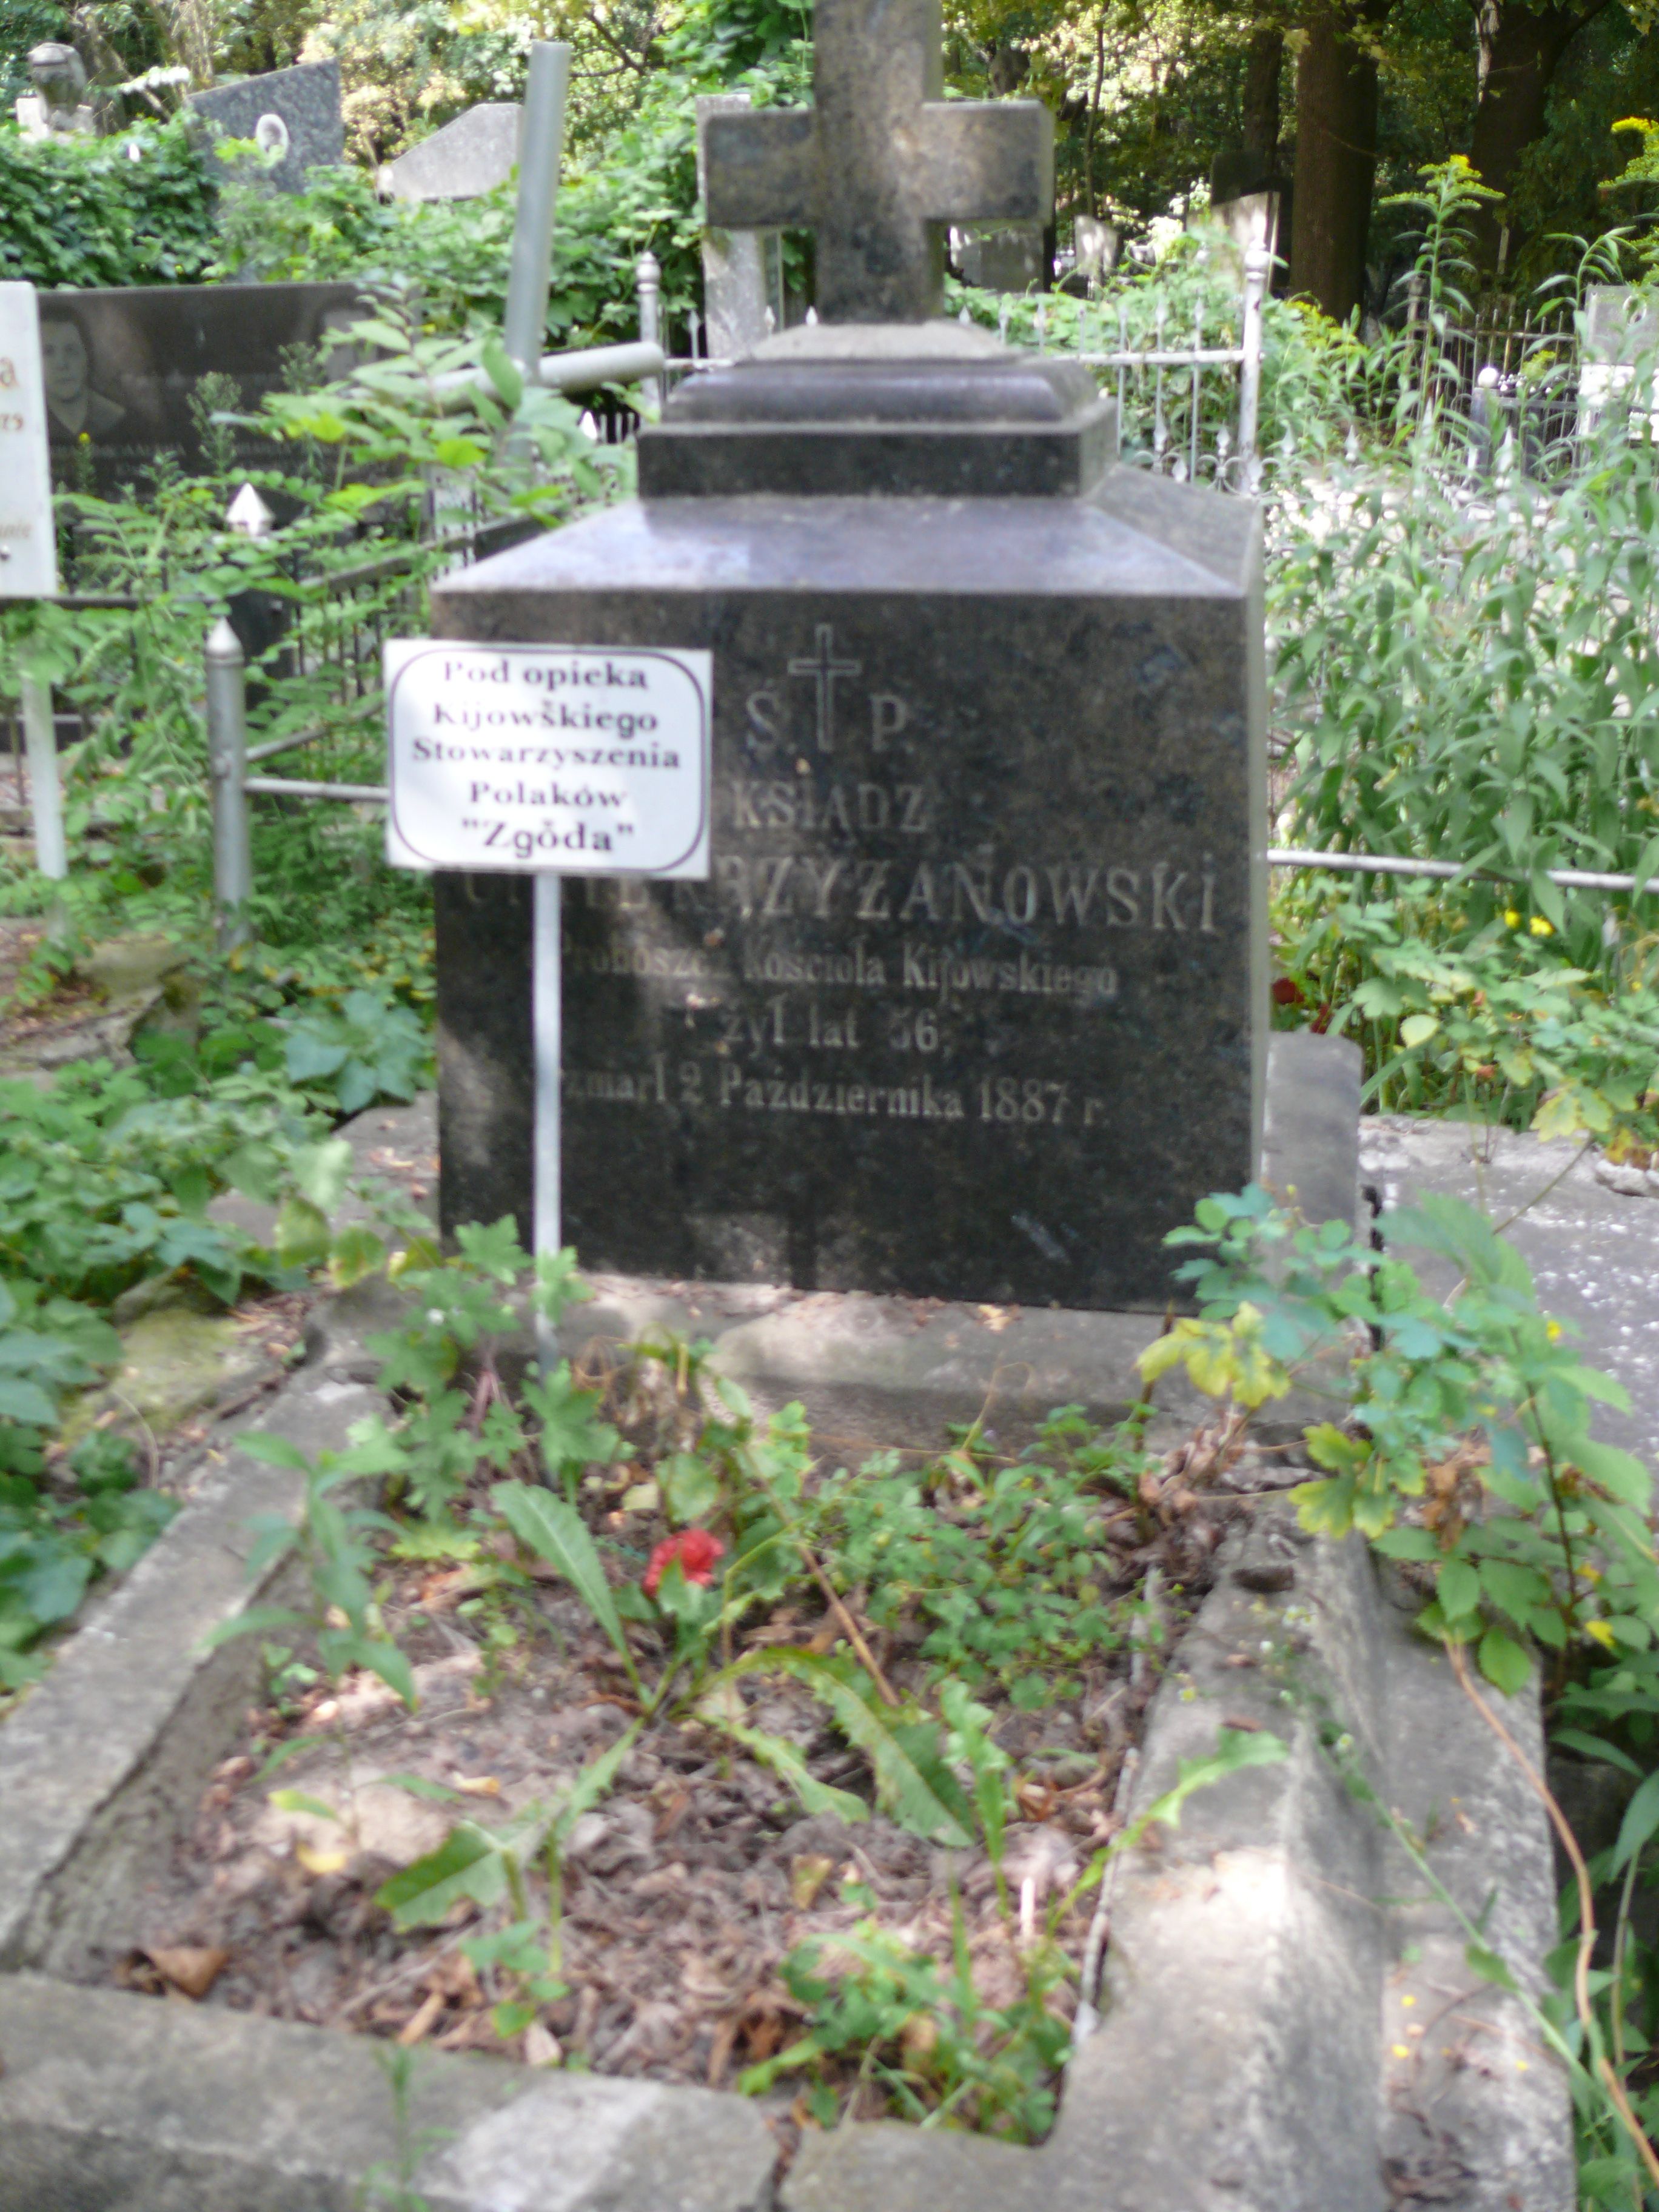 Nagrobek Cyryla Krzyżanowskiego, cmentarz Bajkowa w Kijowie, stan z 2021